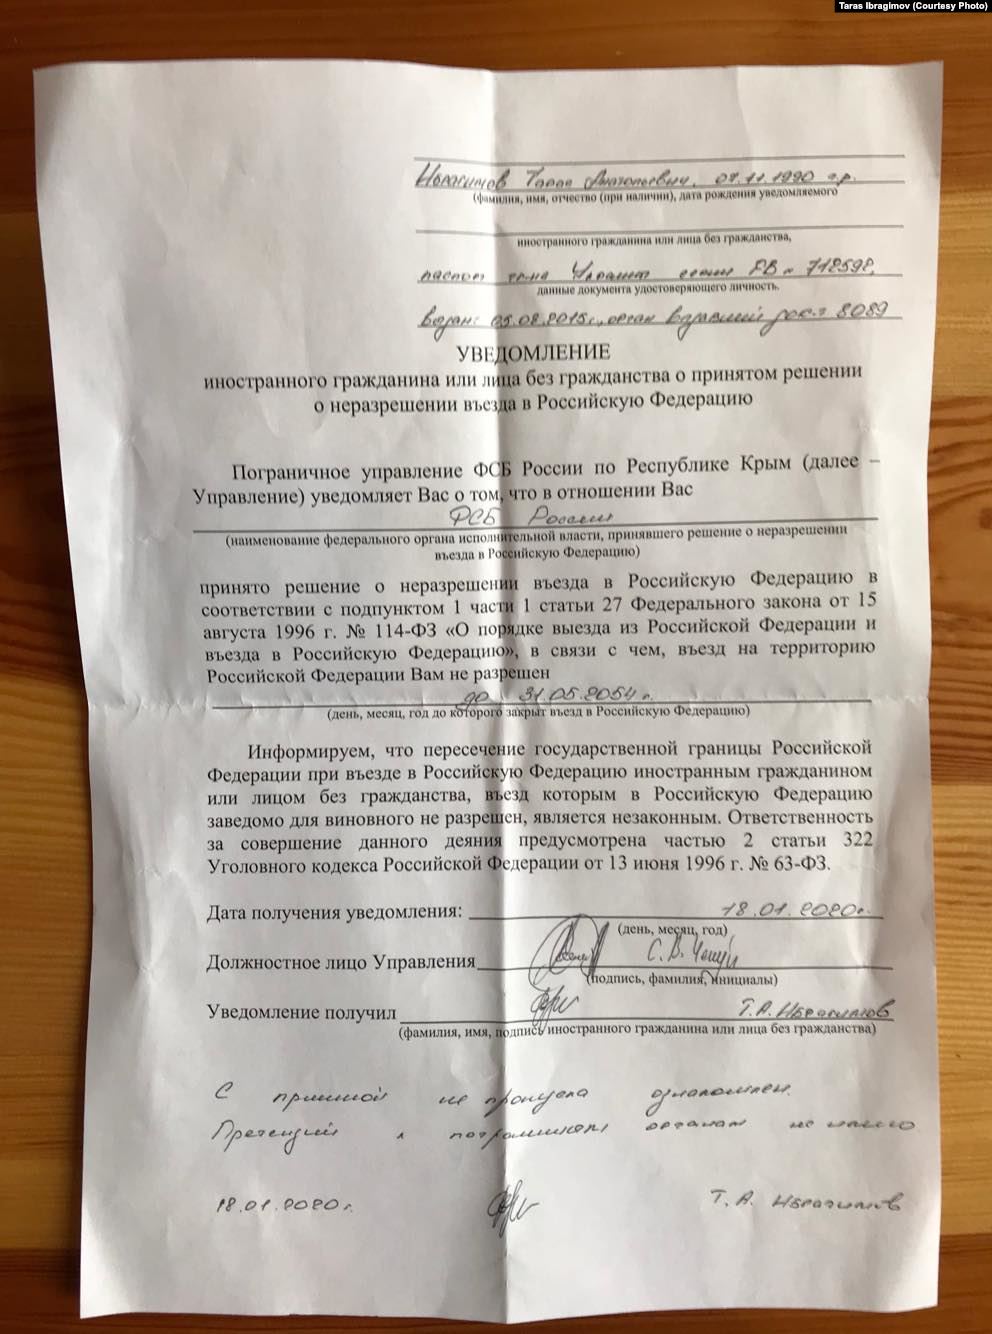 Постановление пограничной службы ФСБ о запрете на въезд. Фото: Тарас Ибрагимов